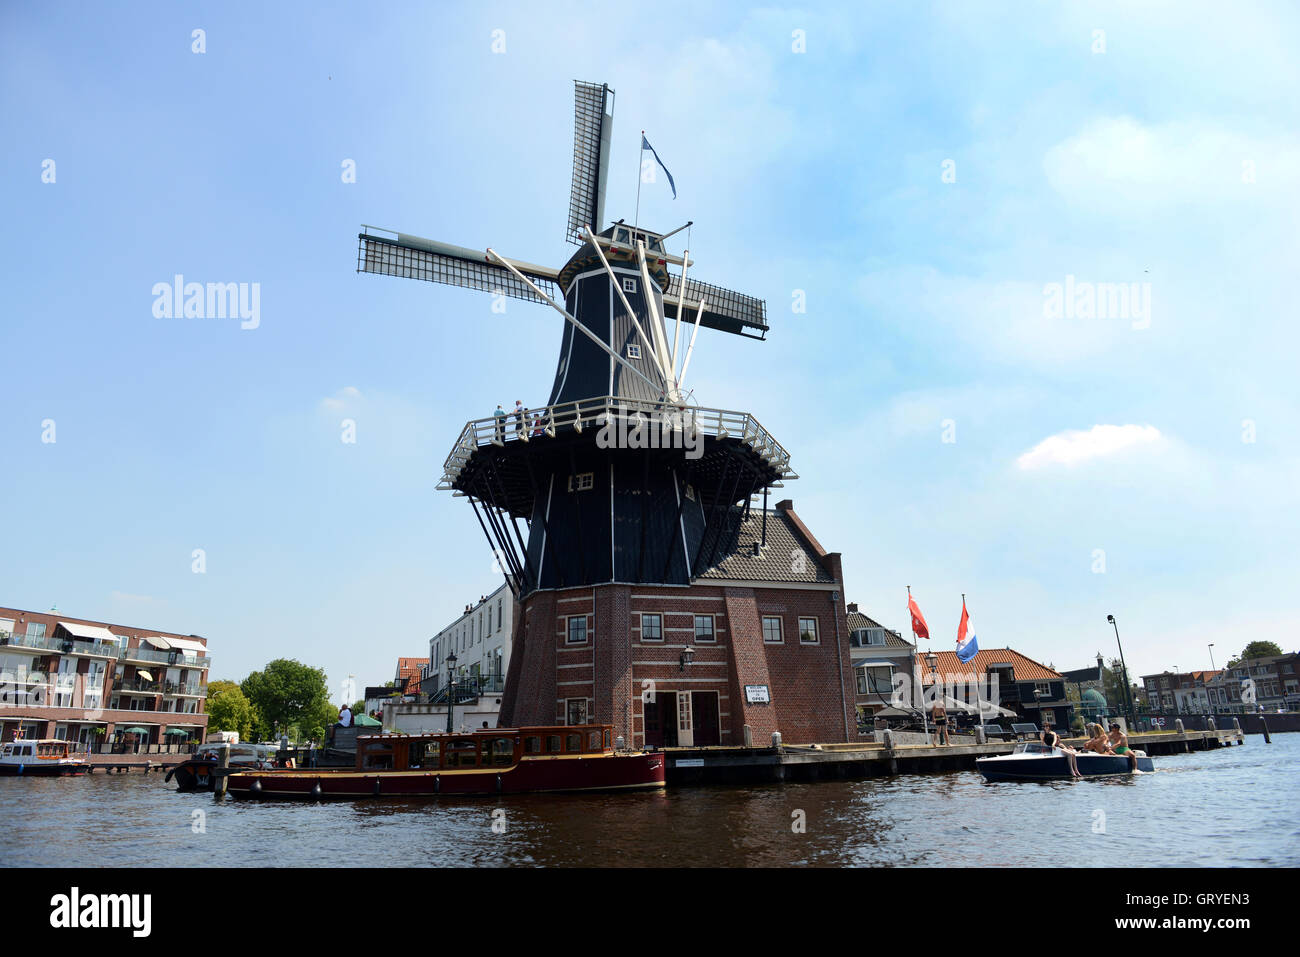 De Adriaan est un moulin à vent aux Pays-Bas qui a brûlé en 1932 et a été reconstruit en 2002. Banque D'Images